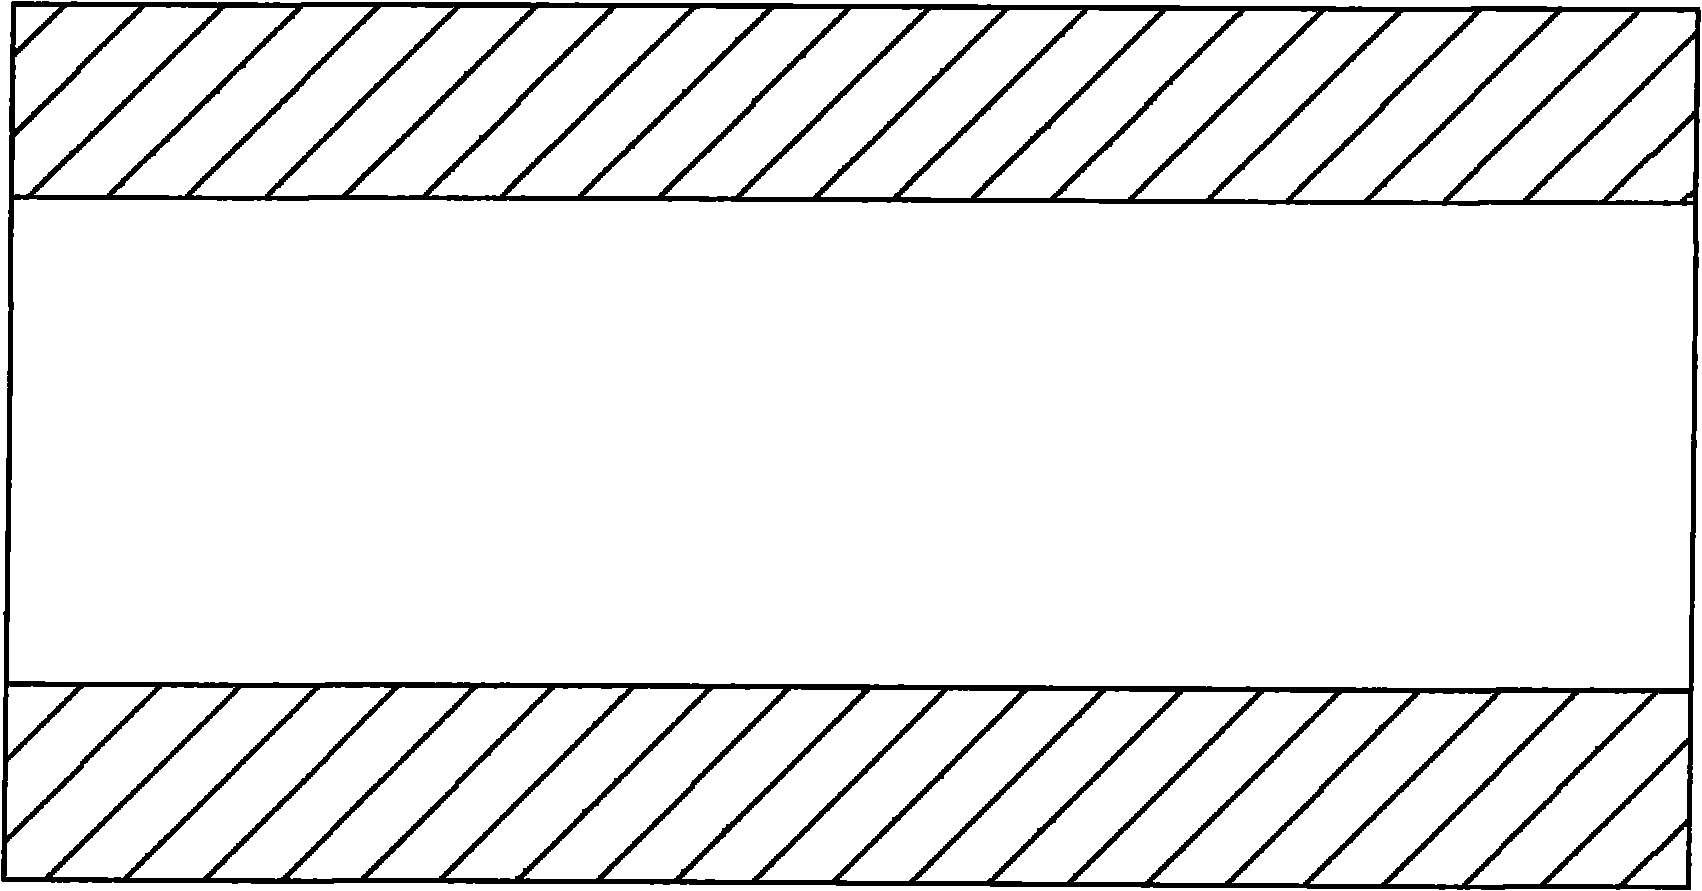 Method for forging Venturi tubes